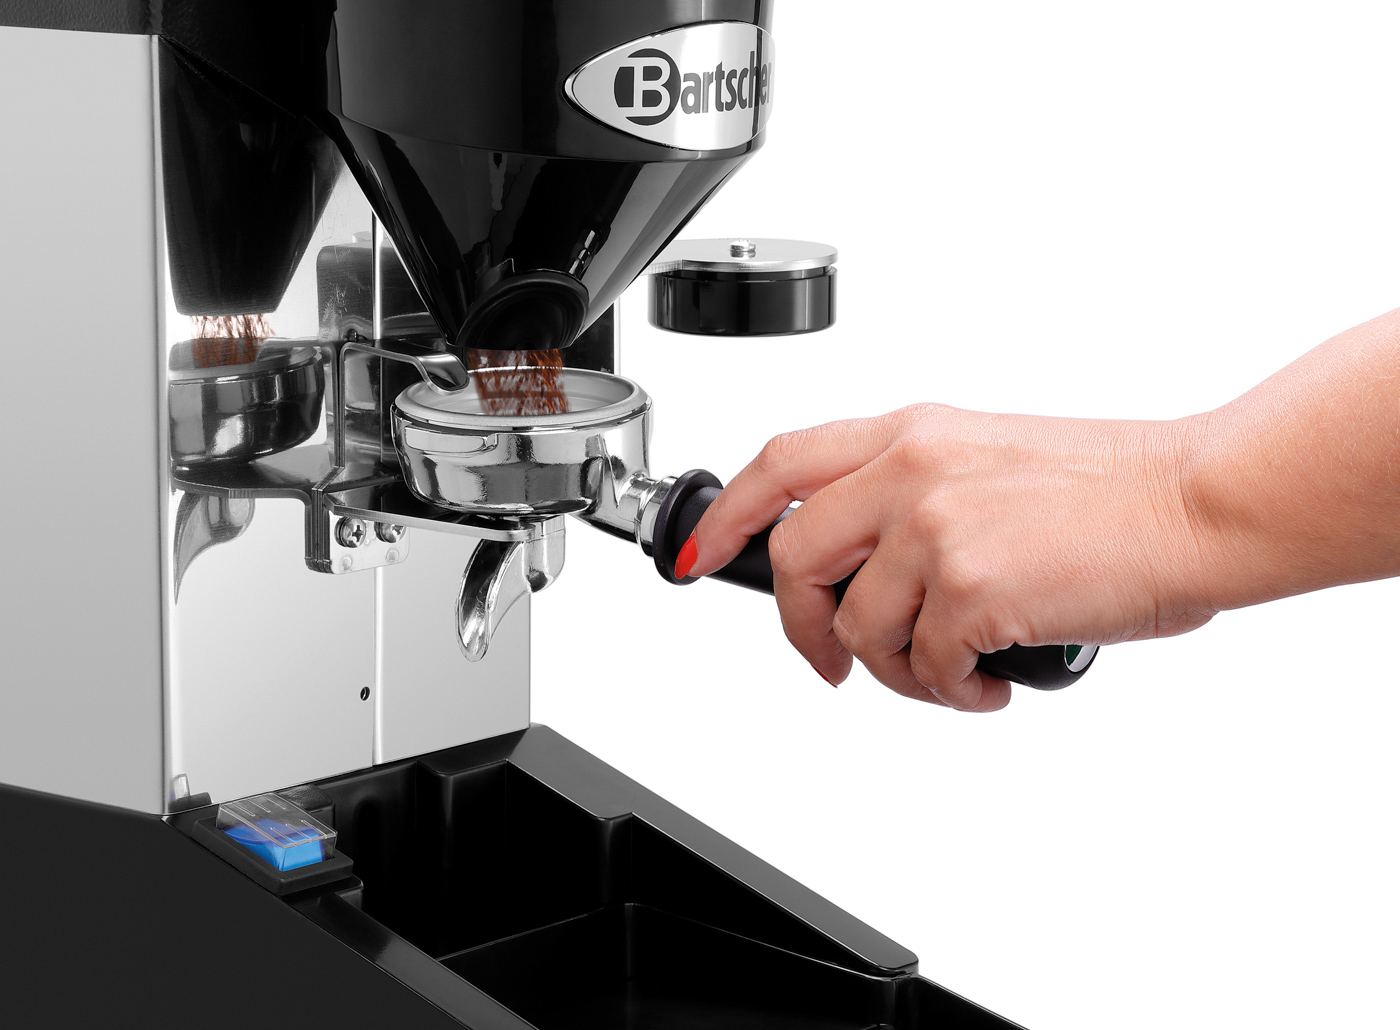 Bartscher Kaffeemühle Tauro Digital | Spannung: 230 V | Maße: 21,5 x 38,5 x 515 cm. Gewicht: 7,9 kg